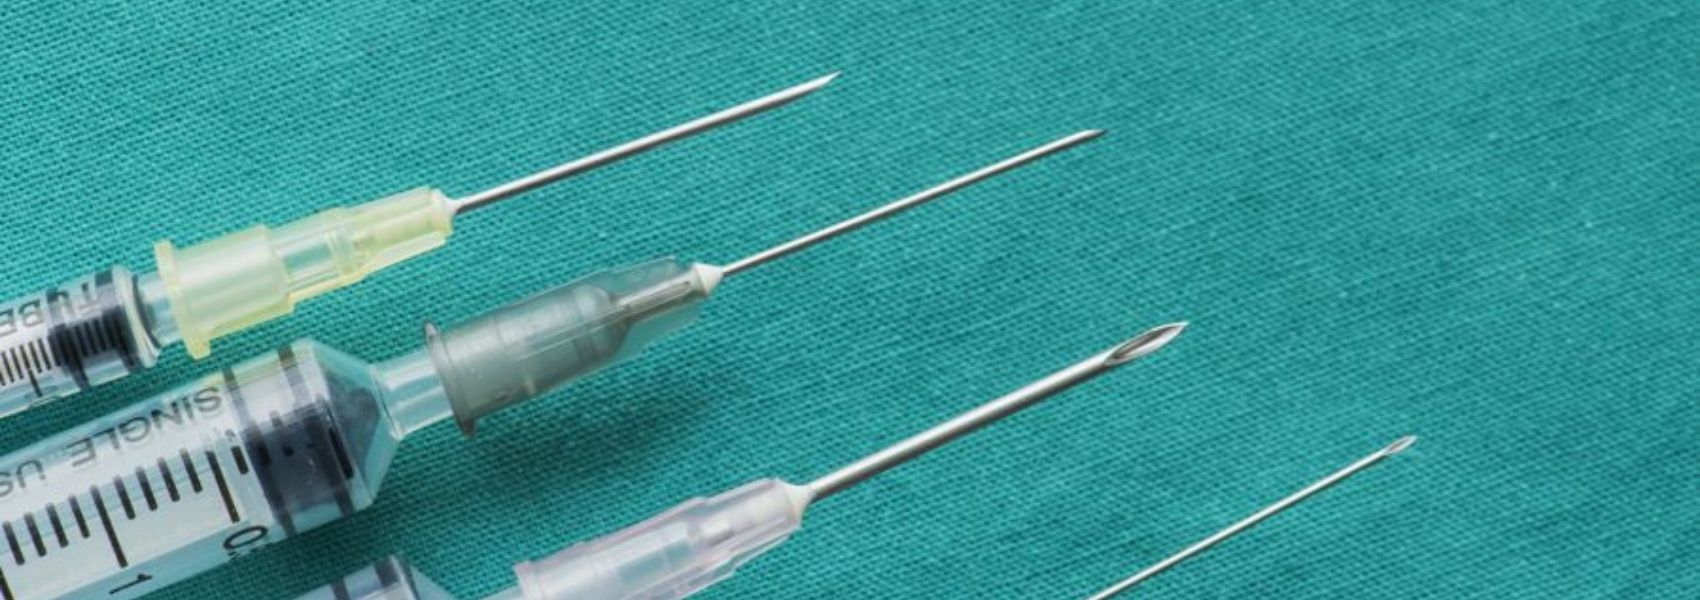 melhorar a seringa para vacinas